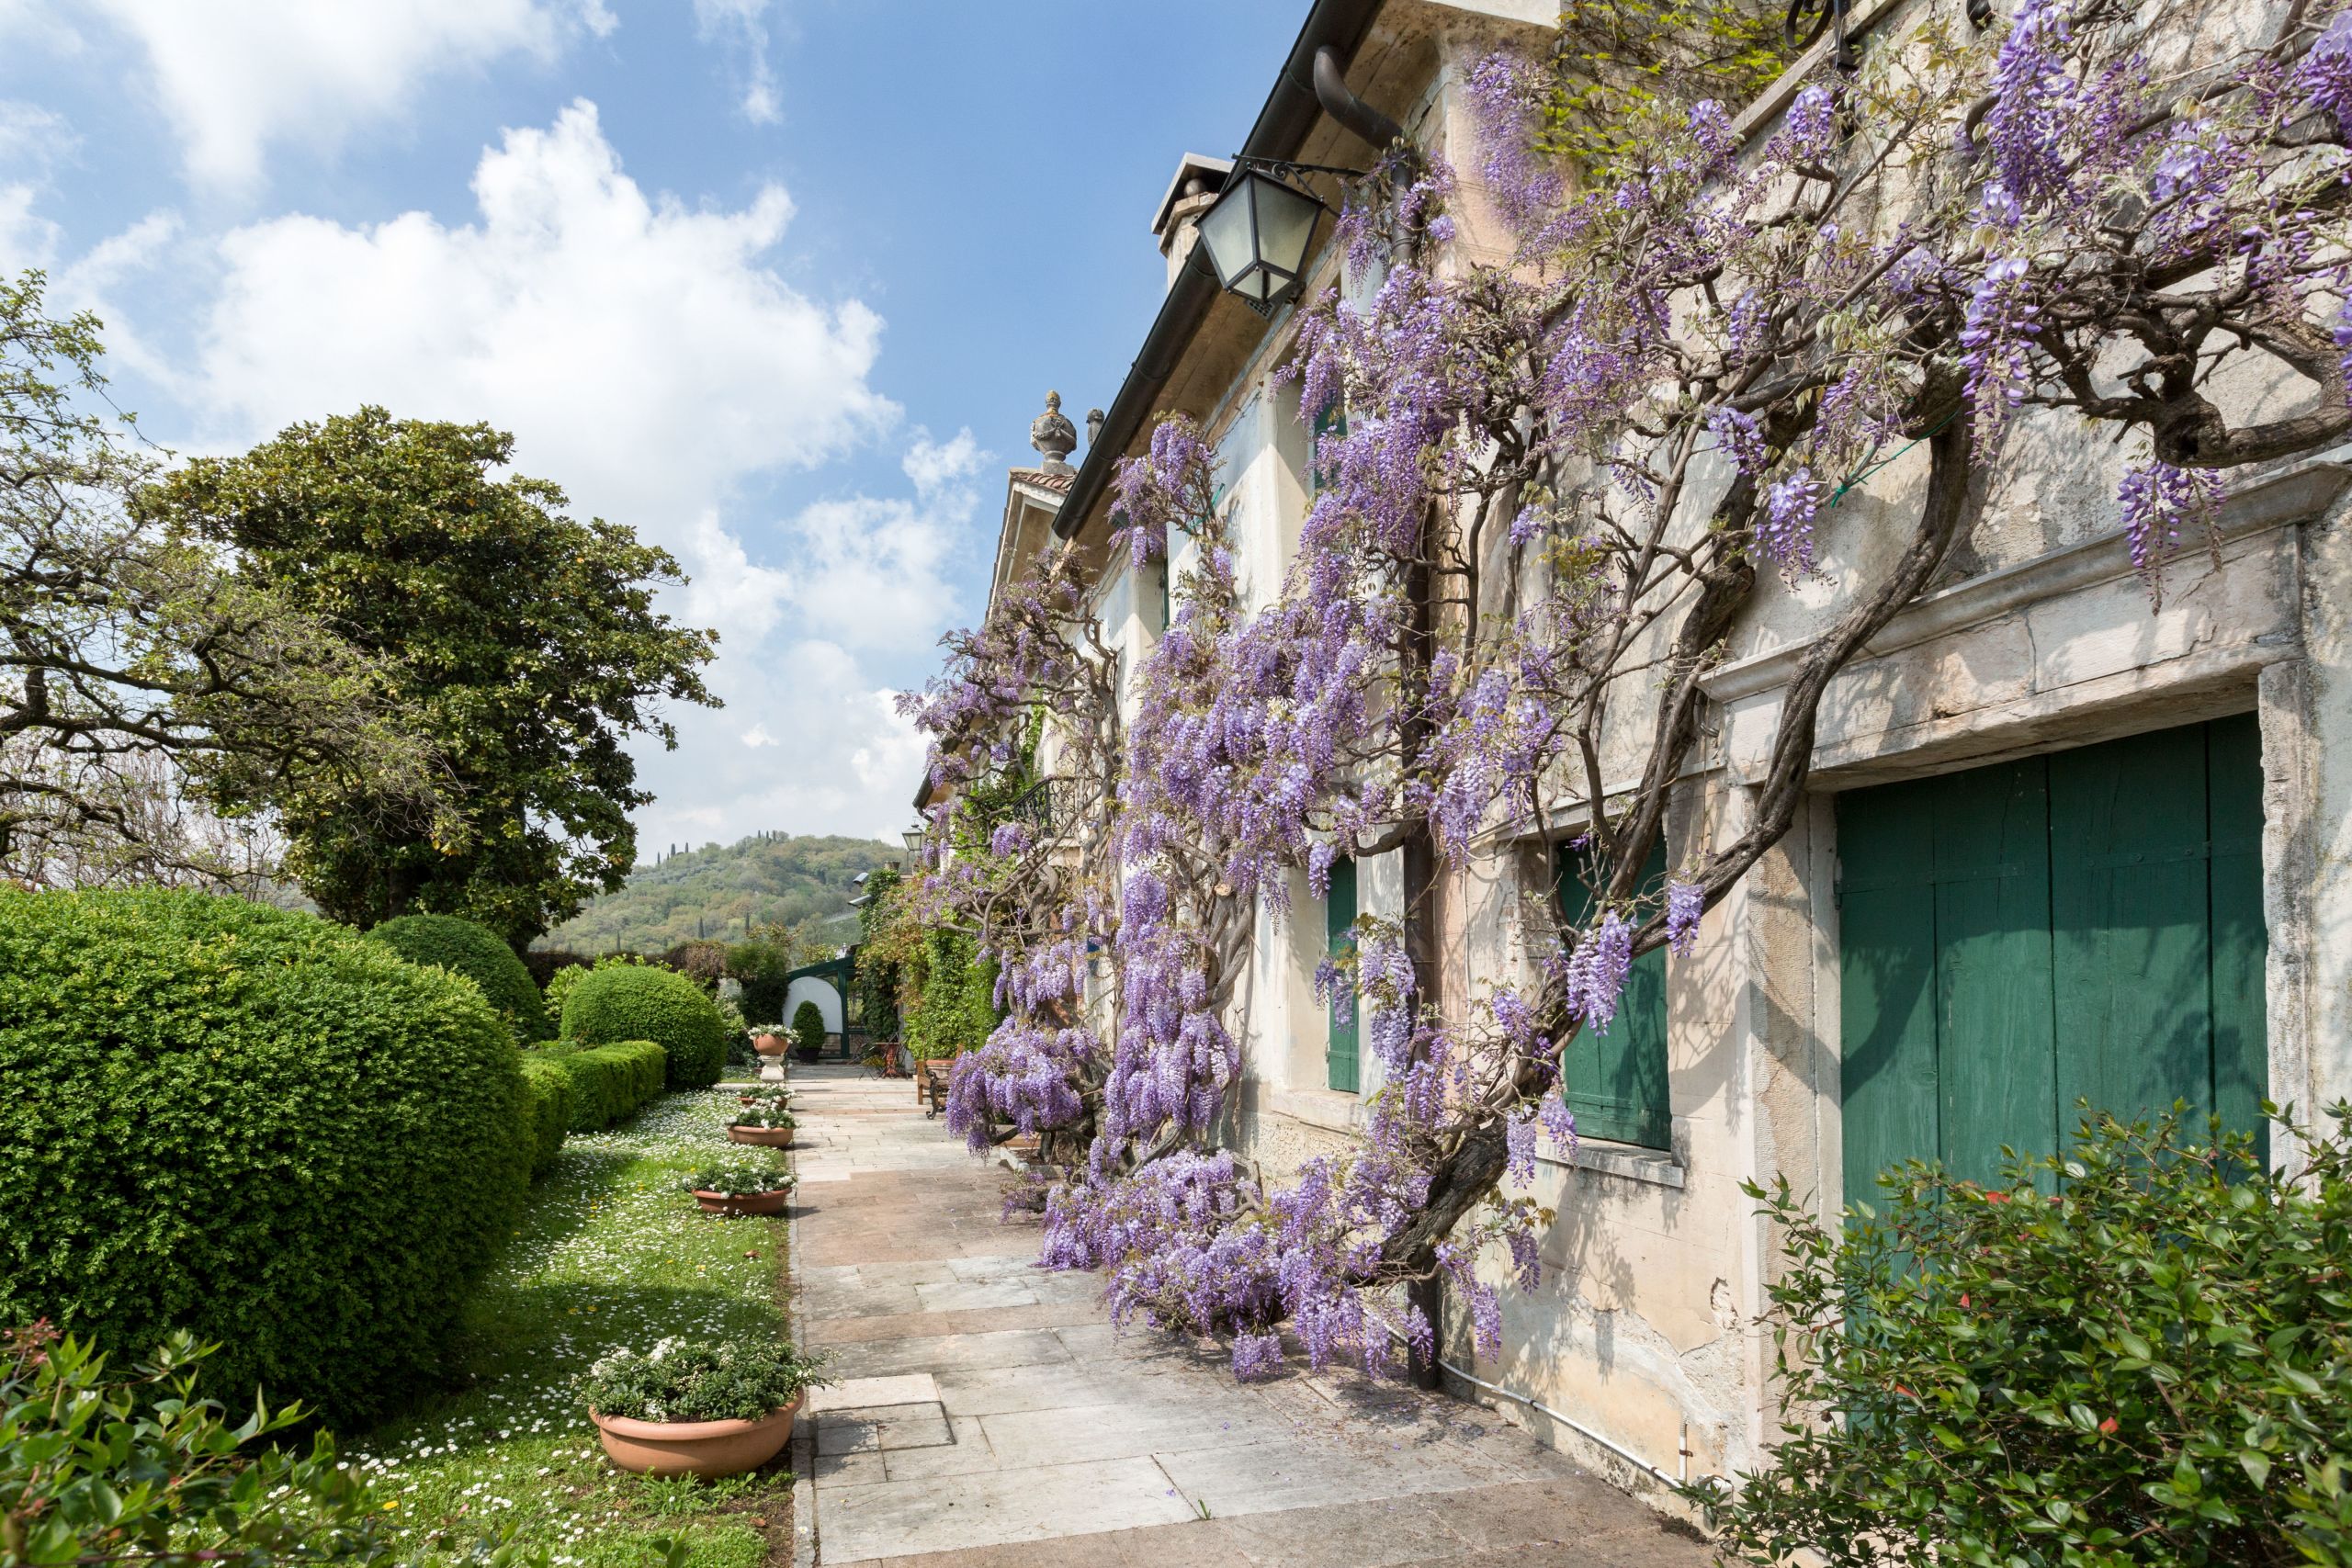 Stradina, prato verde con cespugli, vasi e alberi, edificio con piante rampicanti viola, tra Vicenza e Mestre, Veneto